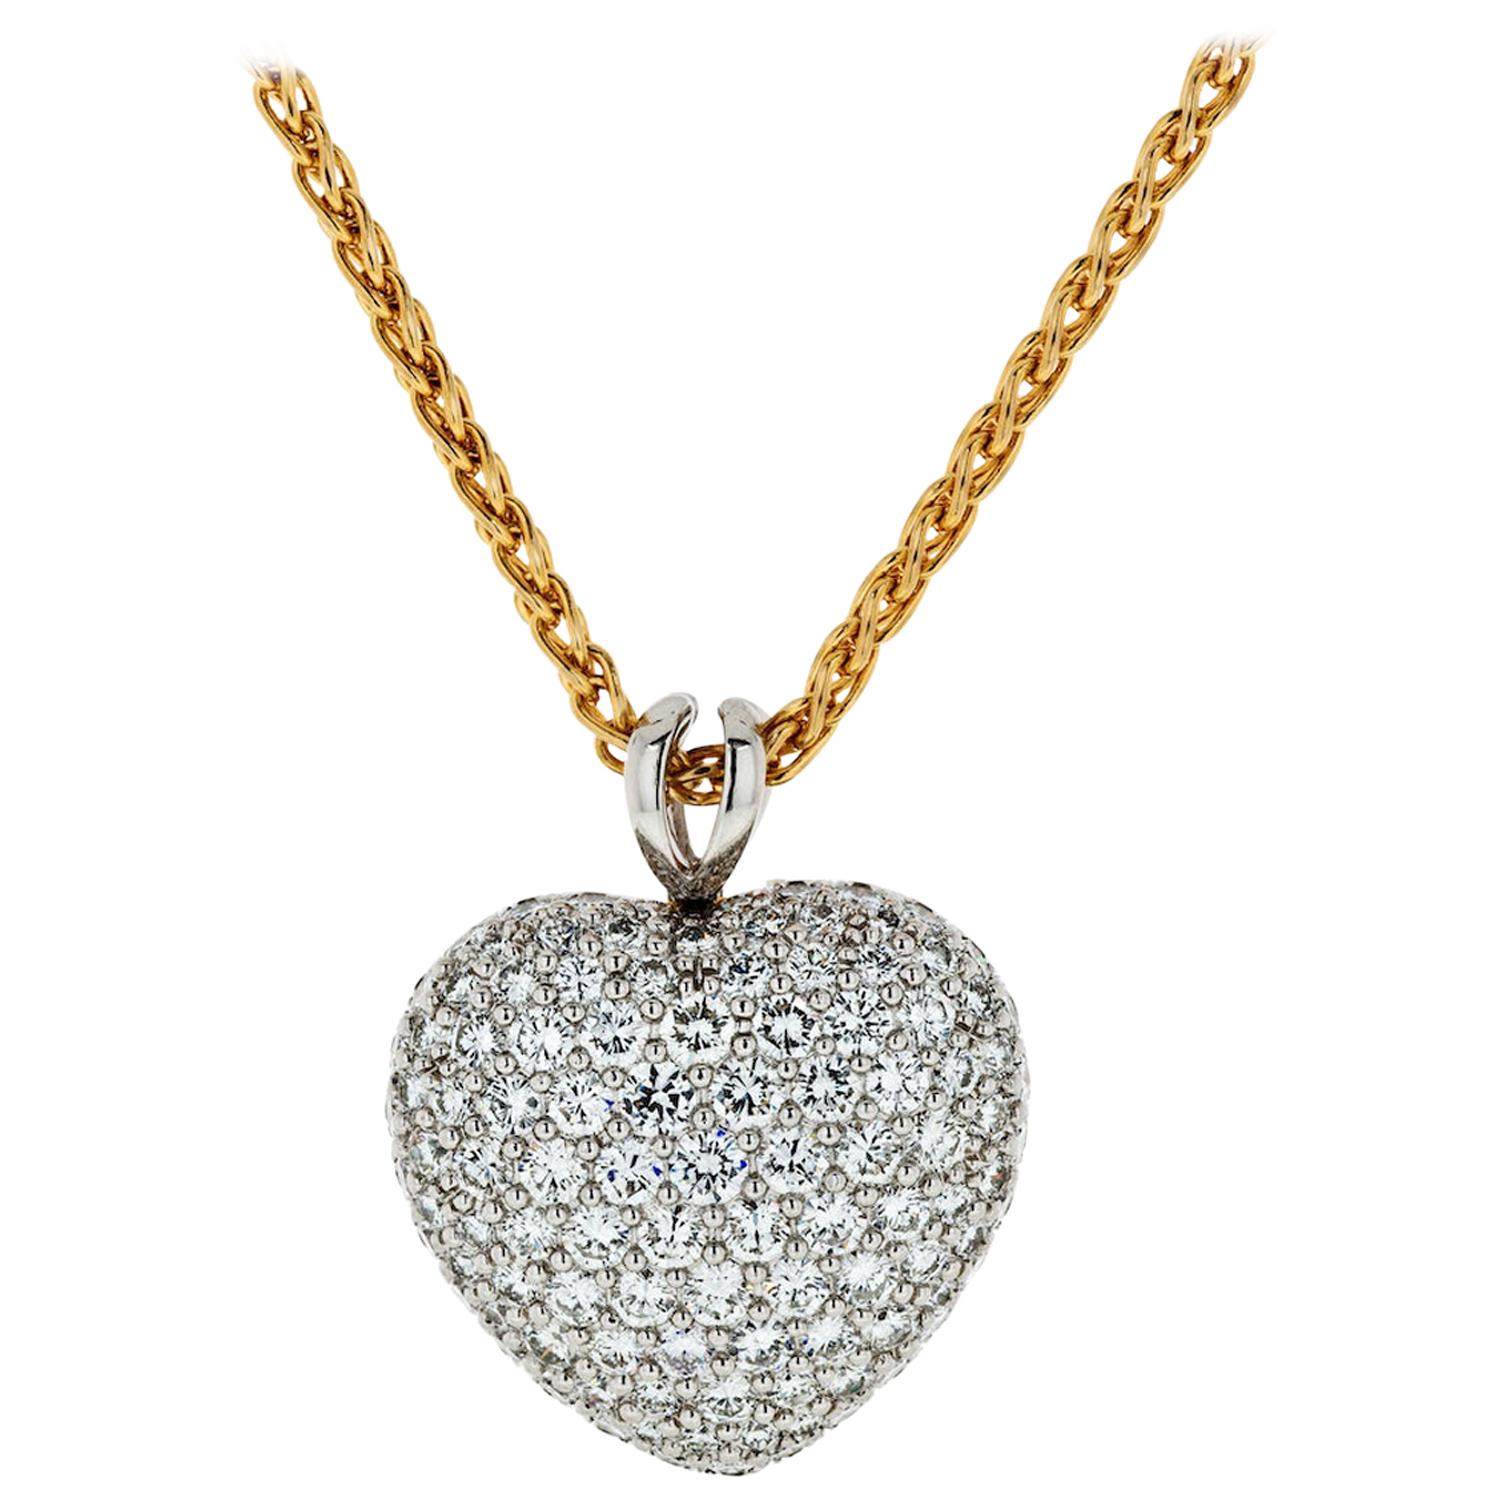 Kurt Wayne Platinum & 18k Yellow Gold 5.50 Carat Diamond Heart Pendant Necklace For Sale